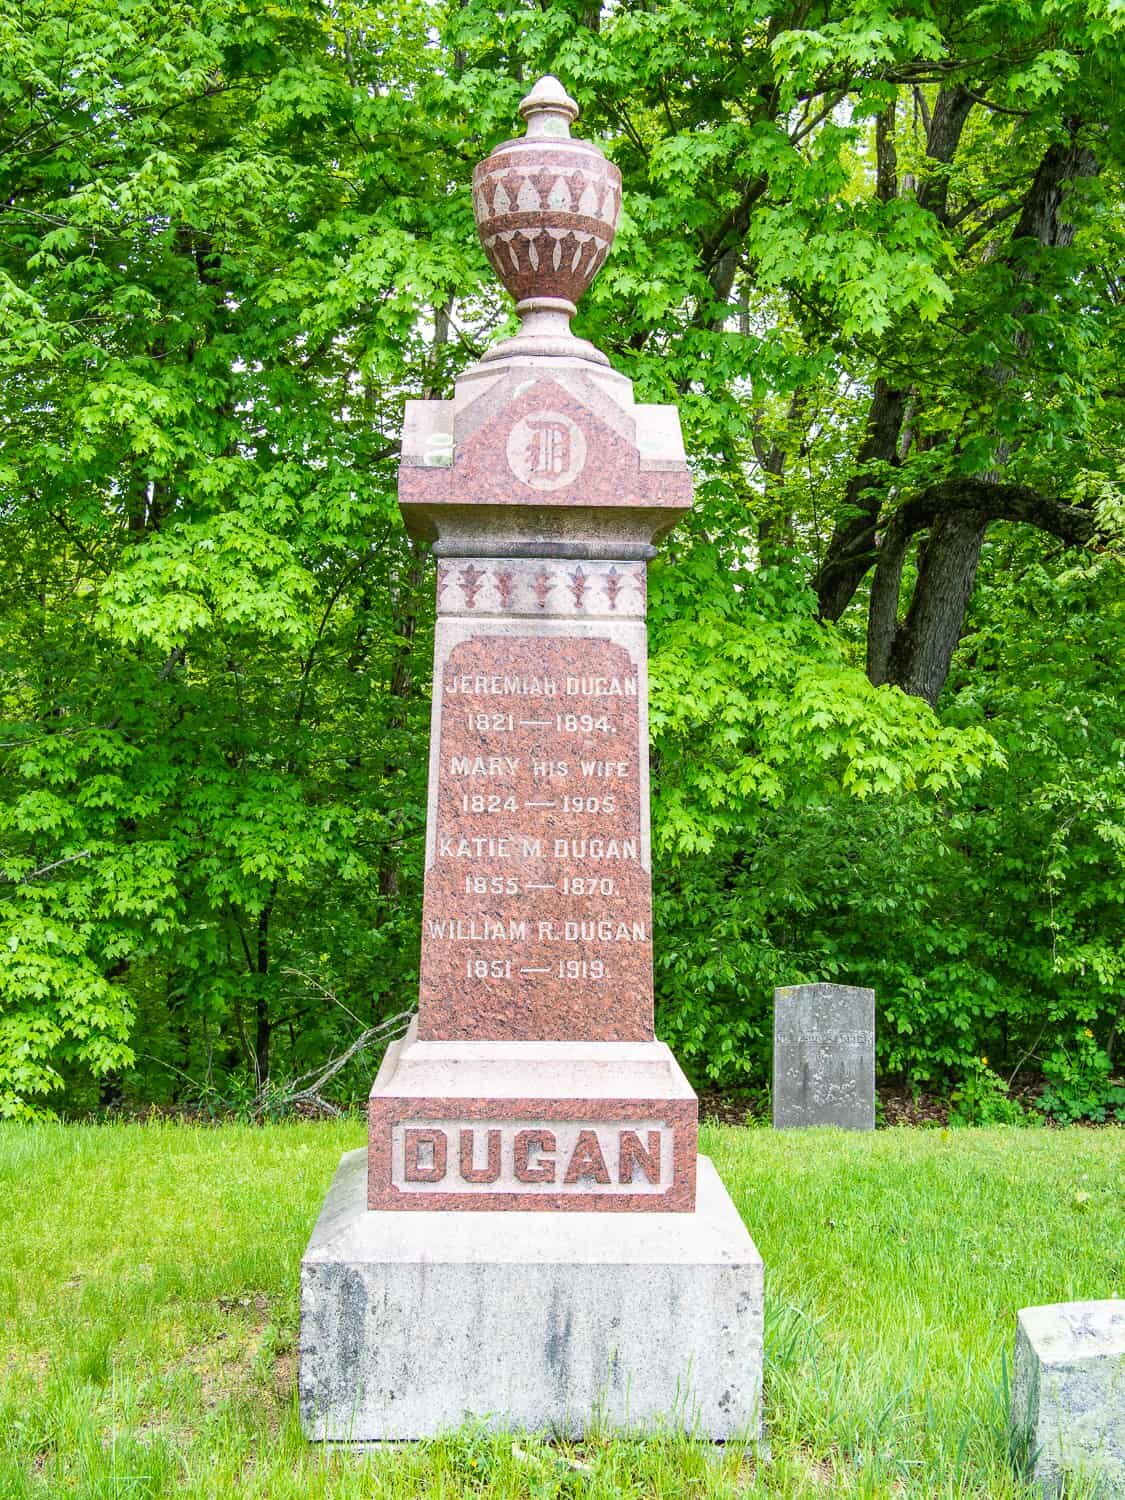 Dugan family granite 19th-20th century monument